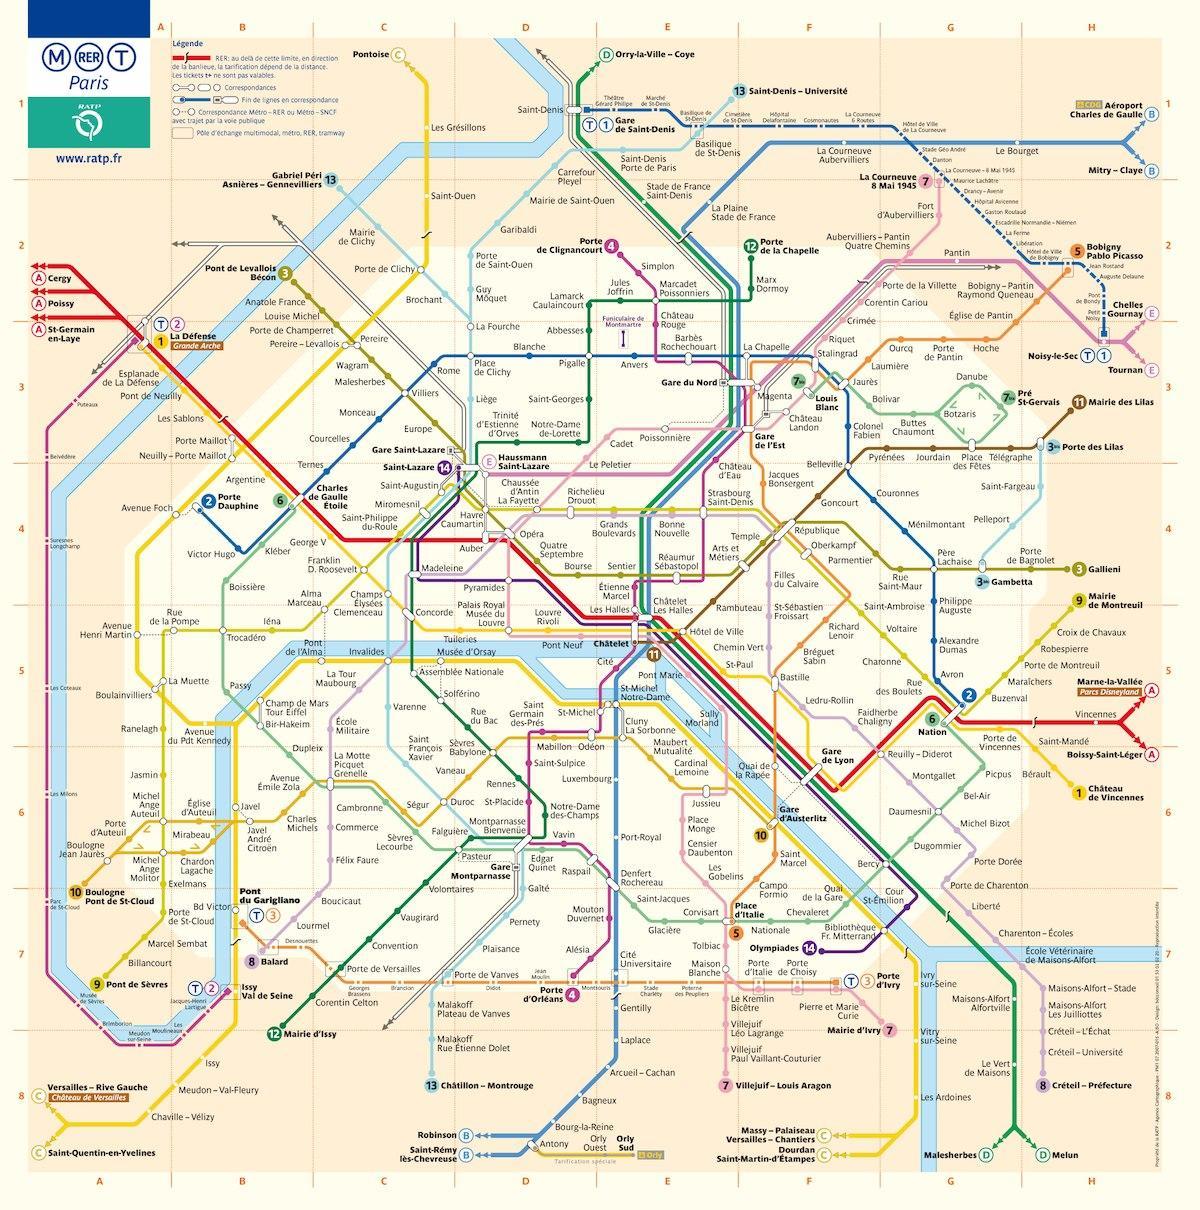 washington dc metro zemljevid z ulice